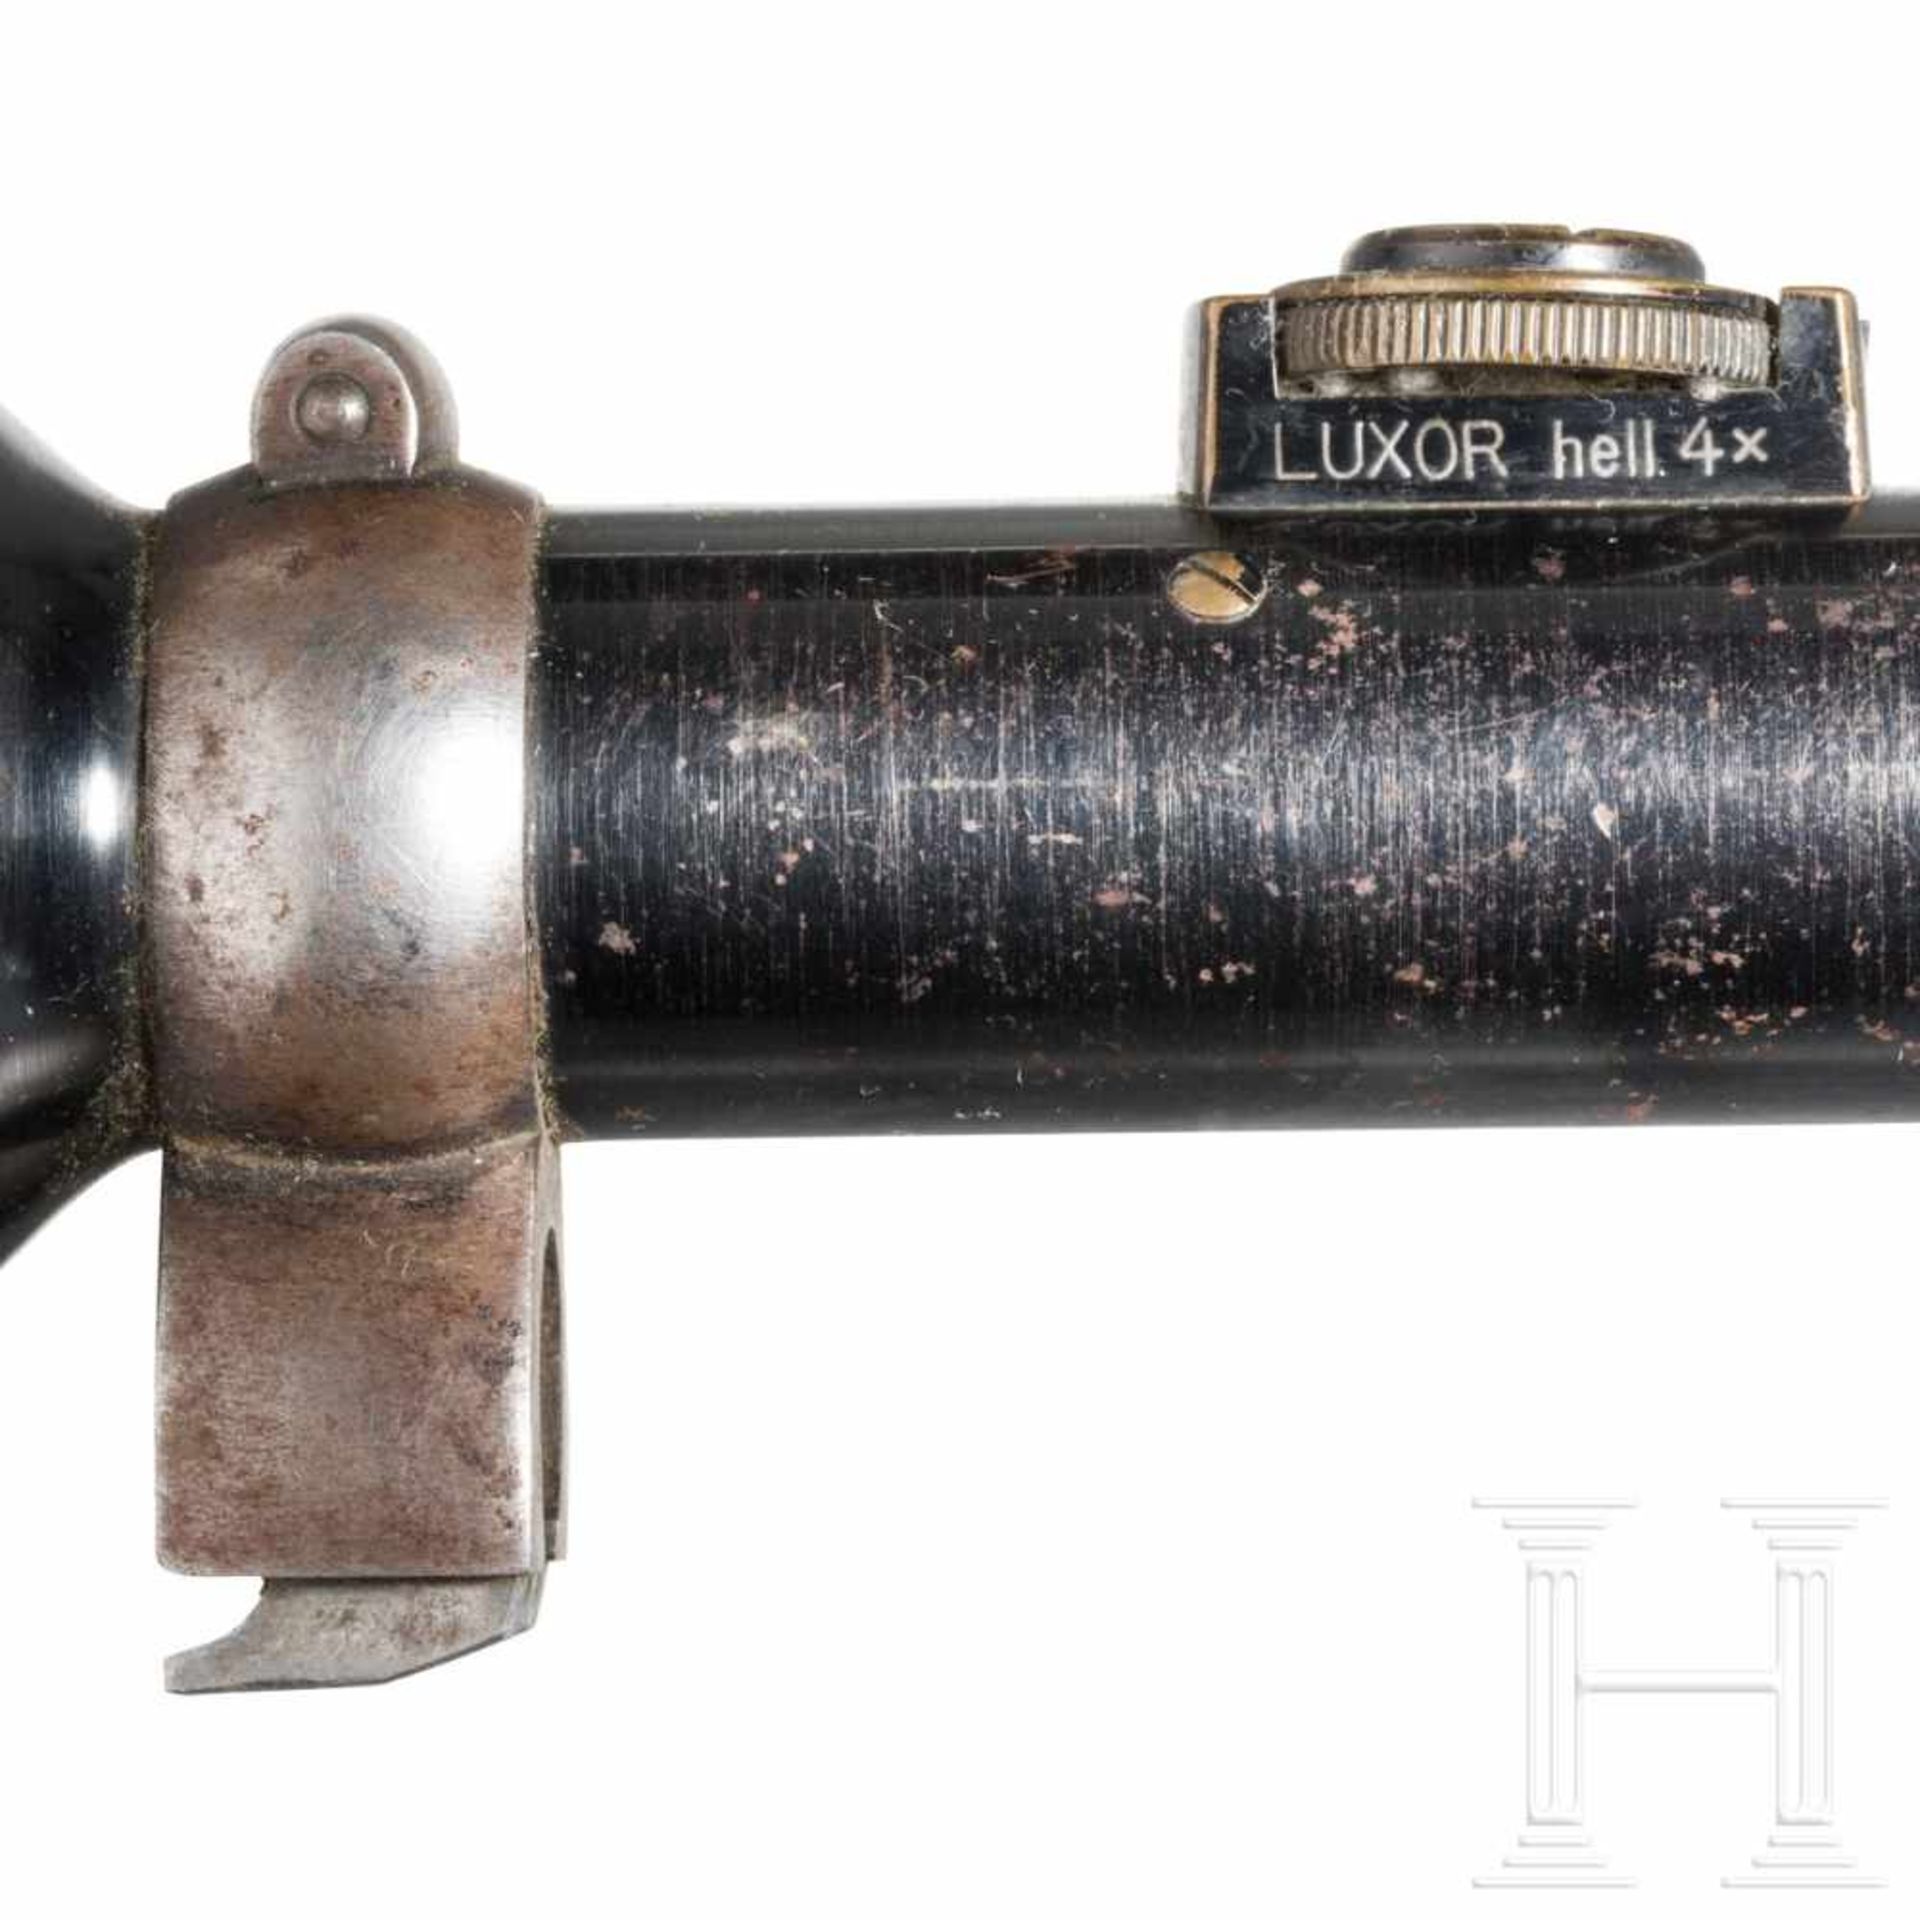 Rifle scope OIGEE Luxor hell 4 x with quiverStahl, brüniert (berieben), Herstellerbezeichnung, - Bild 7 aus 8